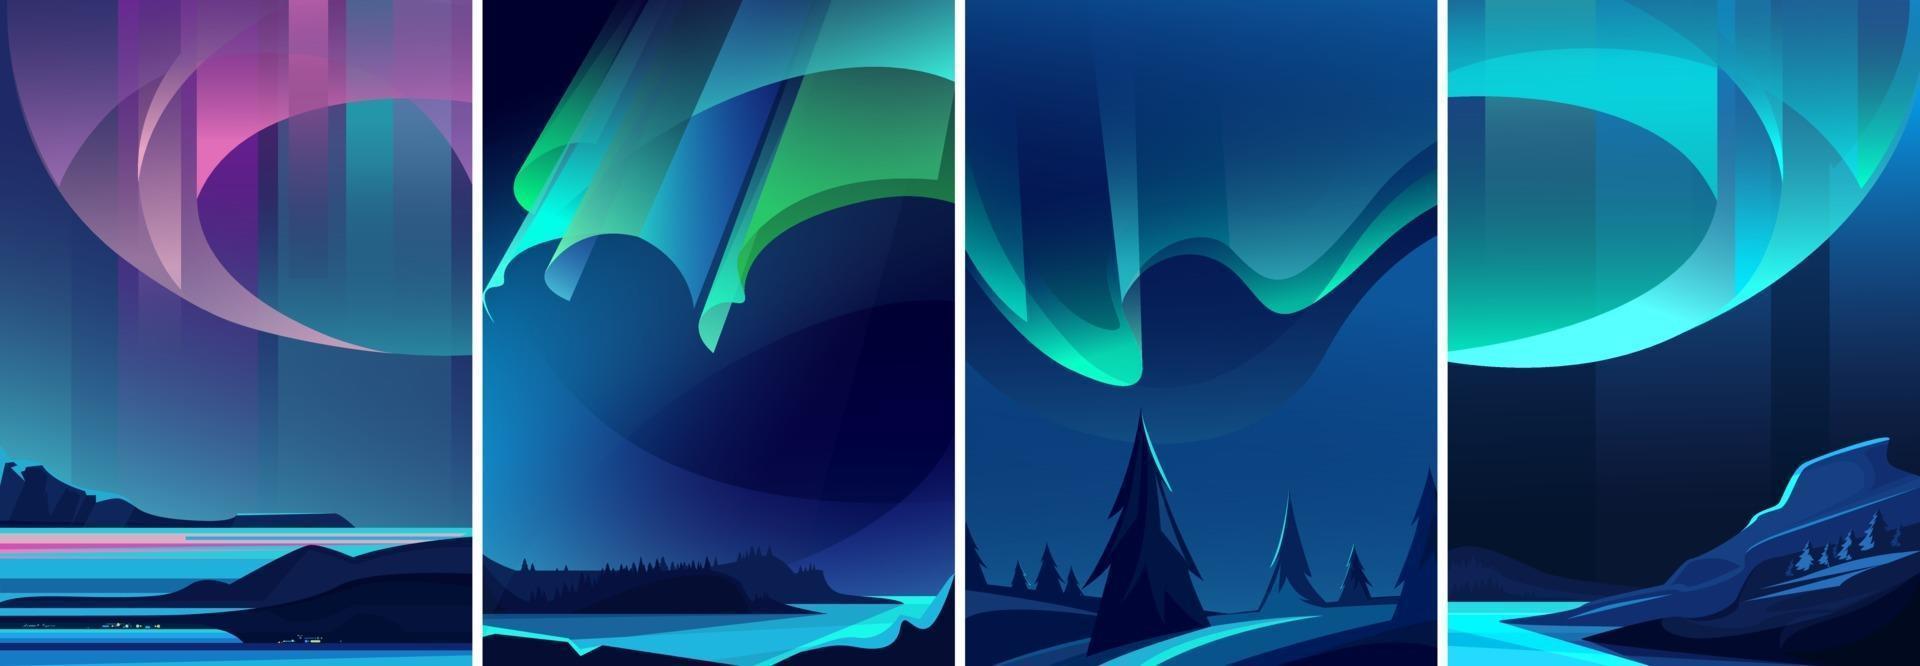 illustrazioni del set di aurora boreale vettore